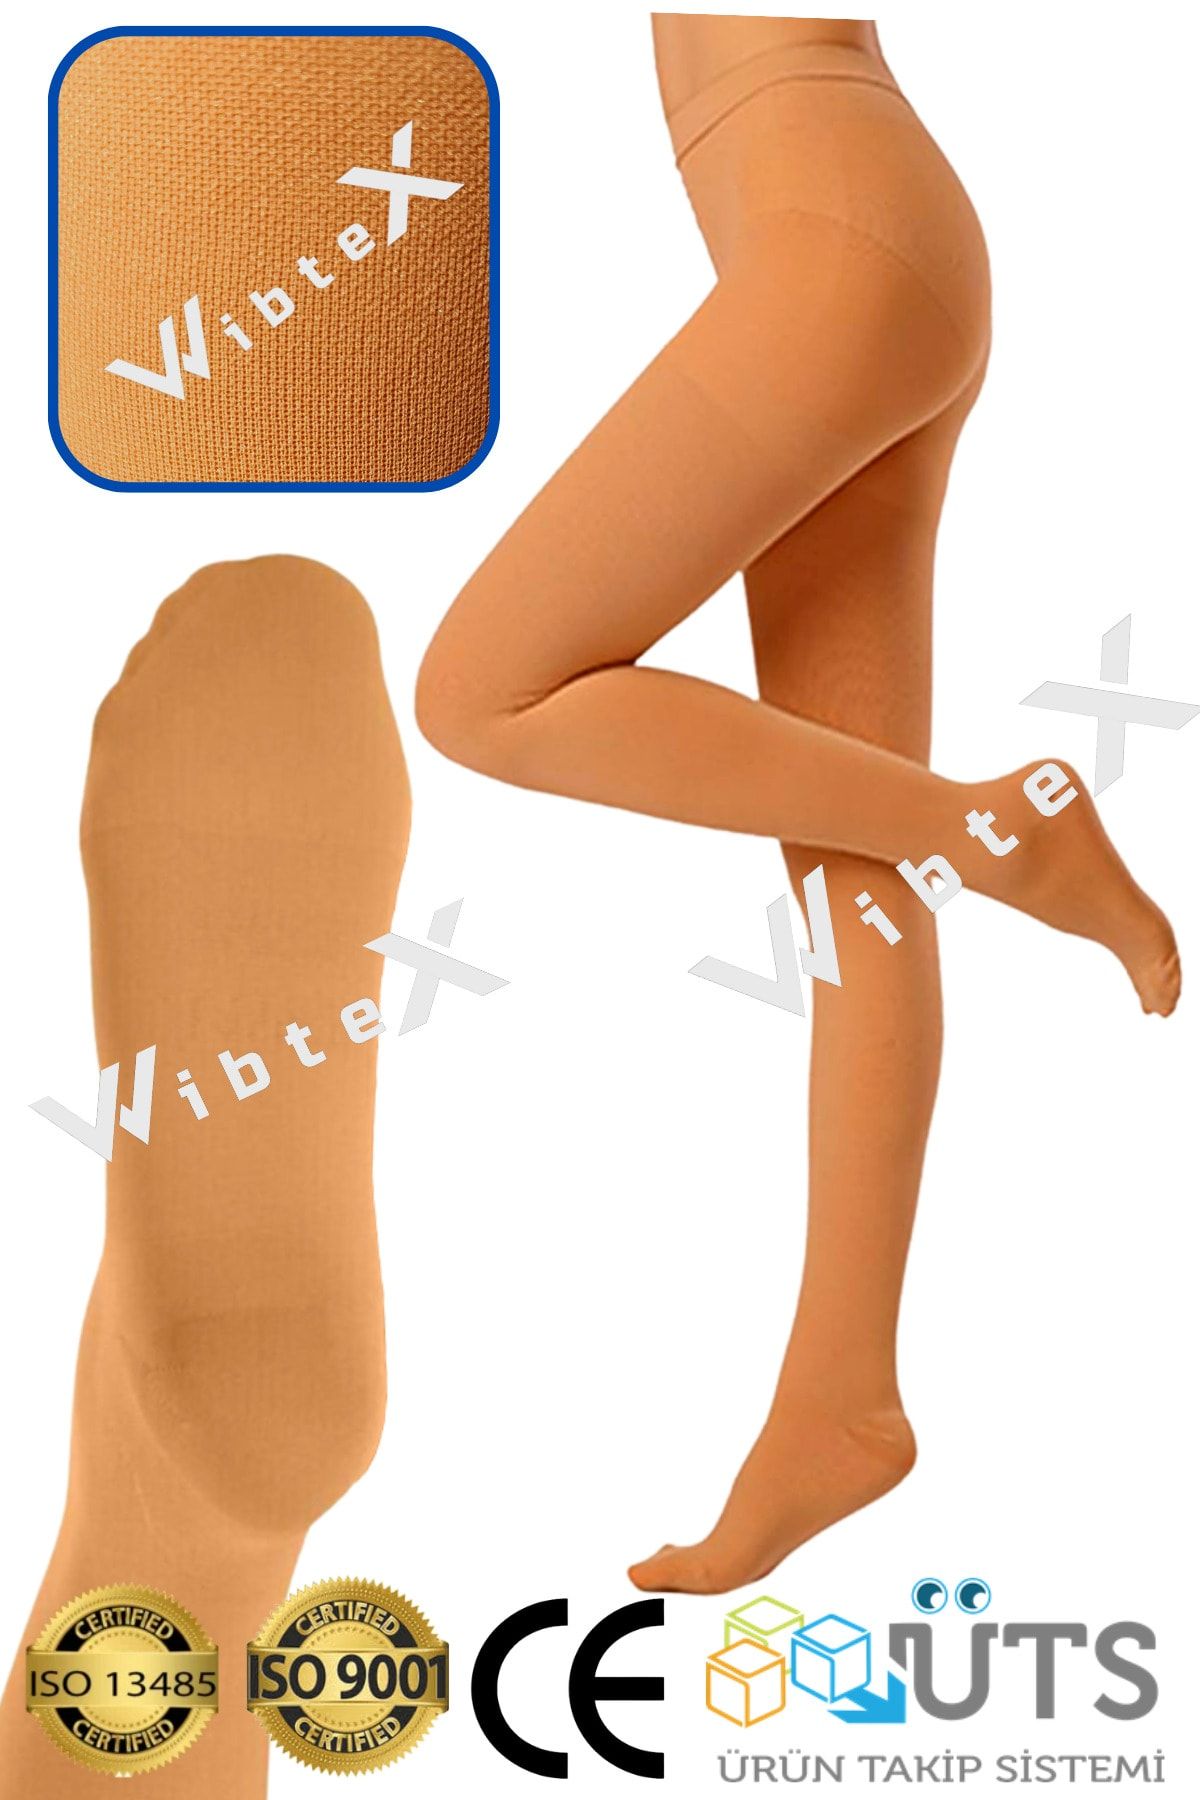 wibtex Külotlu Çorabı Burnu Kapalı (ten Rengi) Orta Basınç Ccl2(çift Bacak)